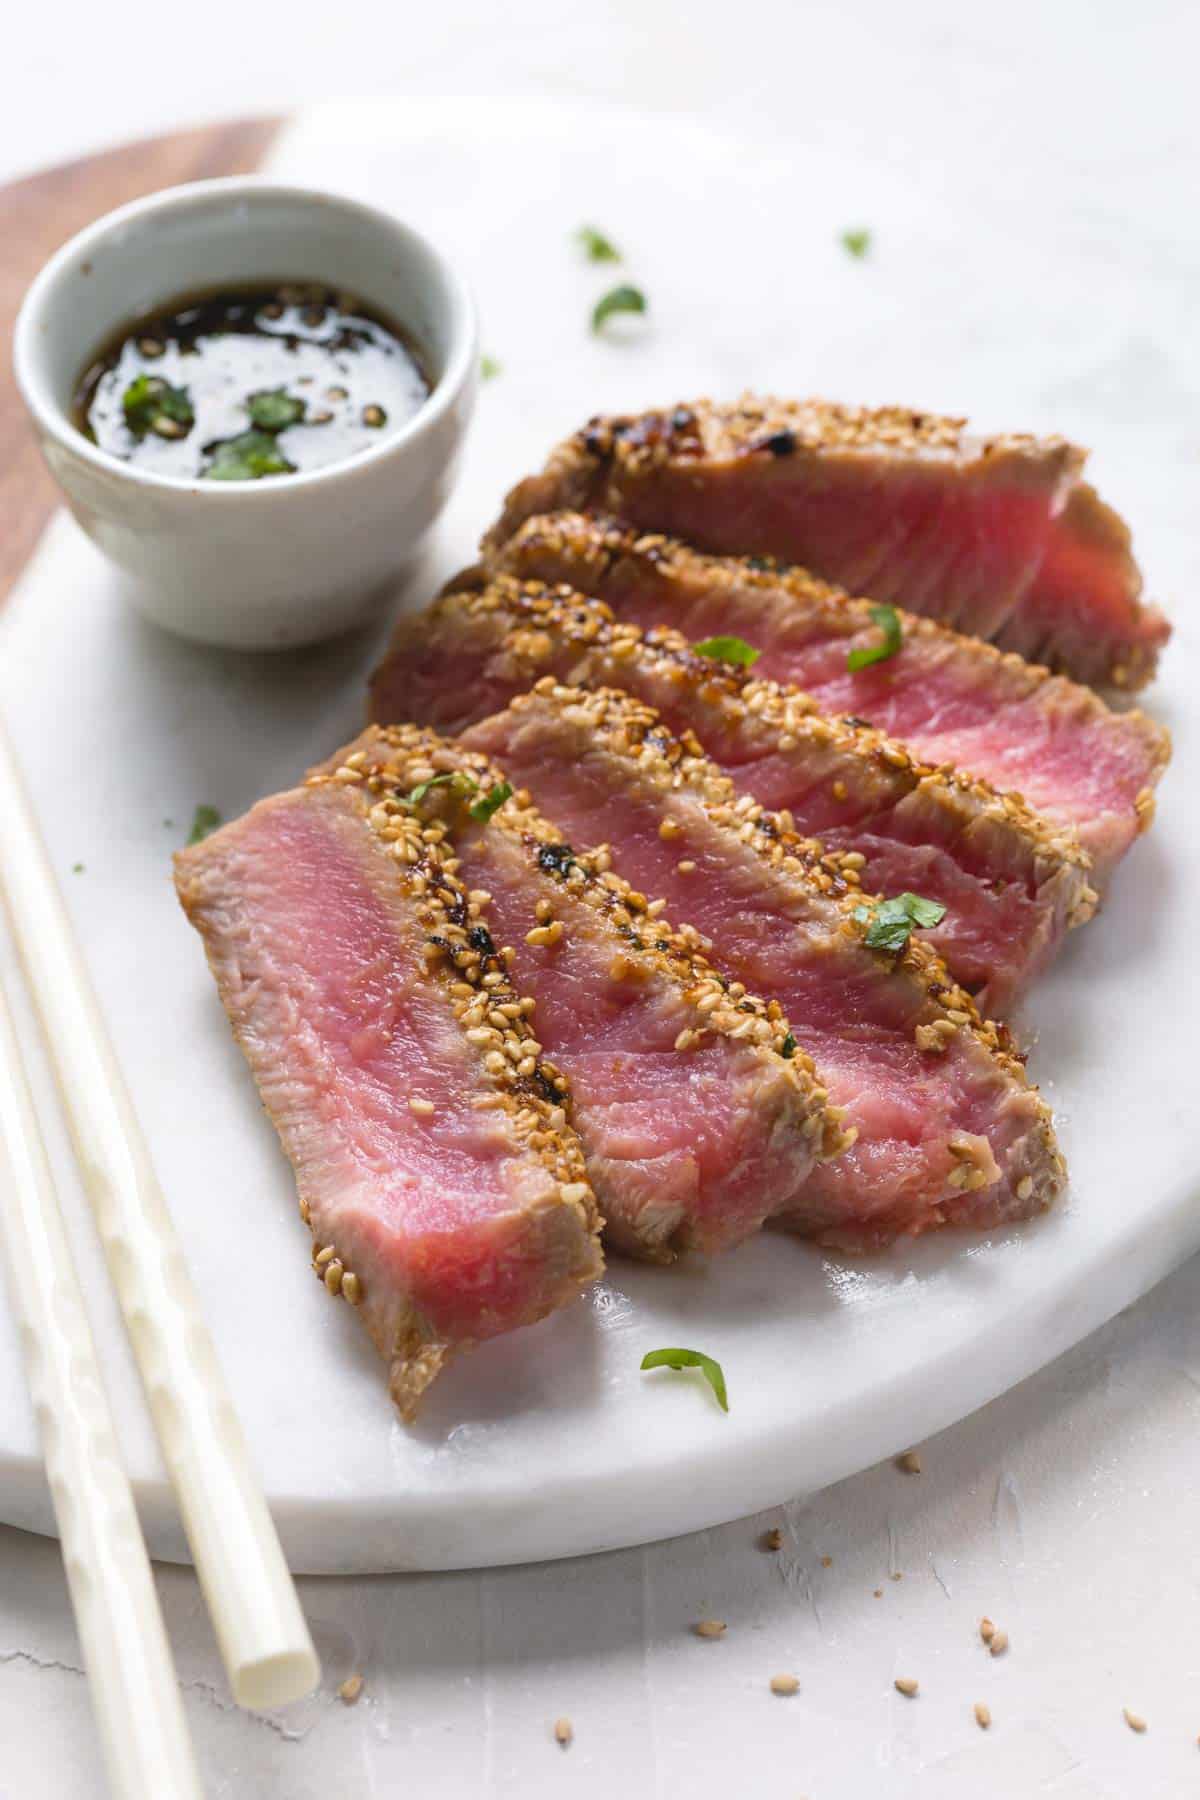 Easy Seared Ahi Tuna Steak Recipe - My Bios